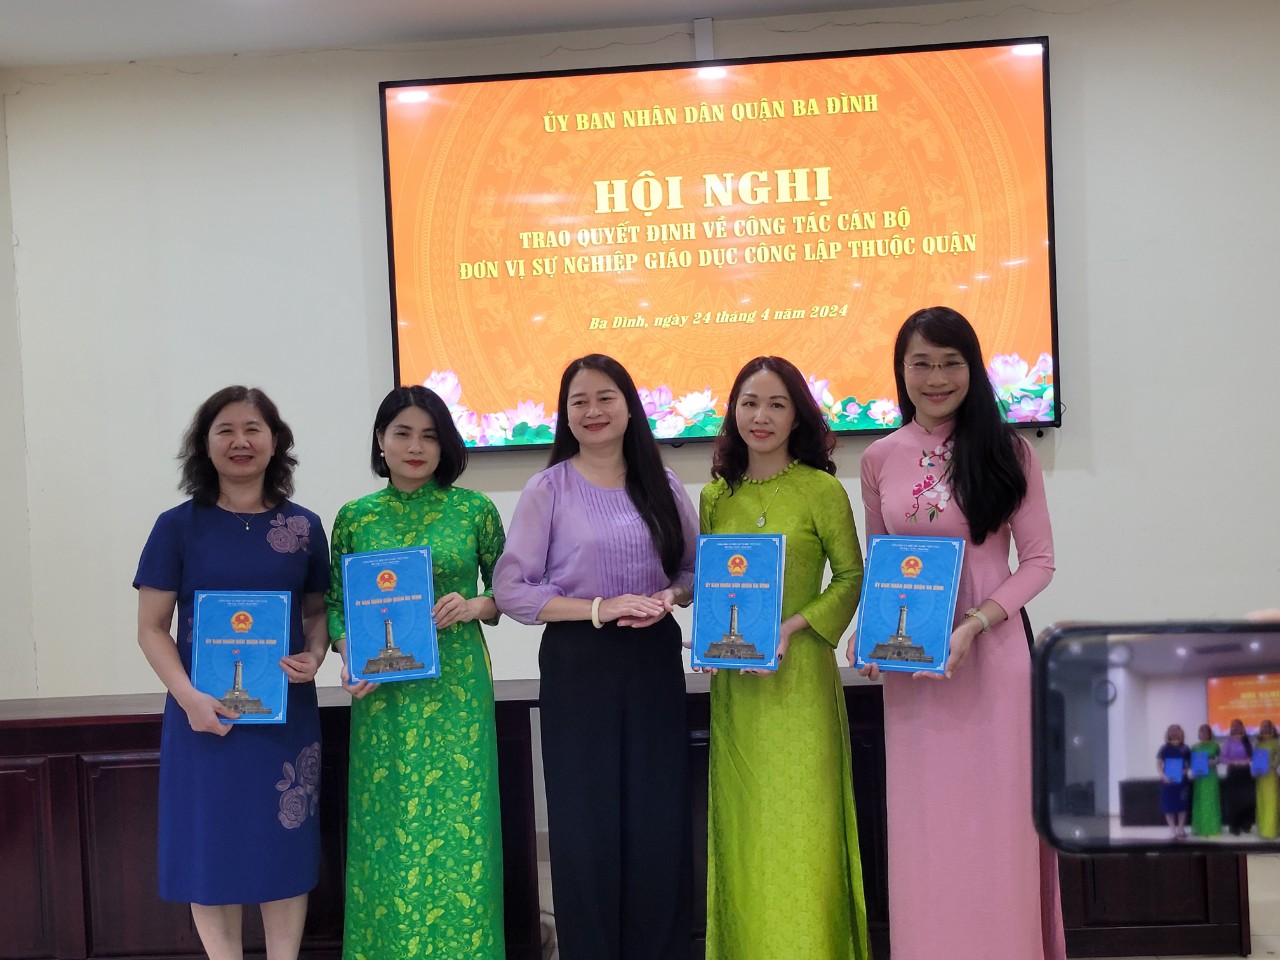 Trường THCS Ba Đình chào đón đồng chí Phó Hiệu trưởng Nguyễn Ngọc Dung về công tác tại trường